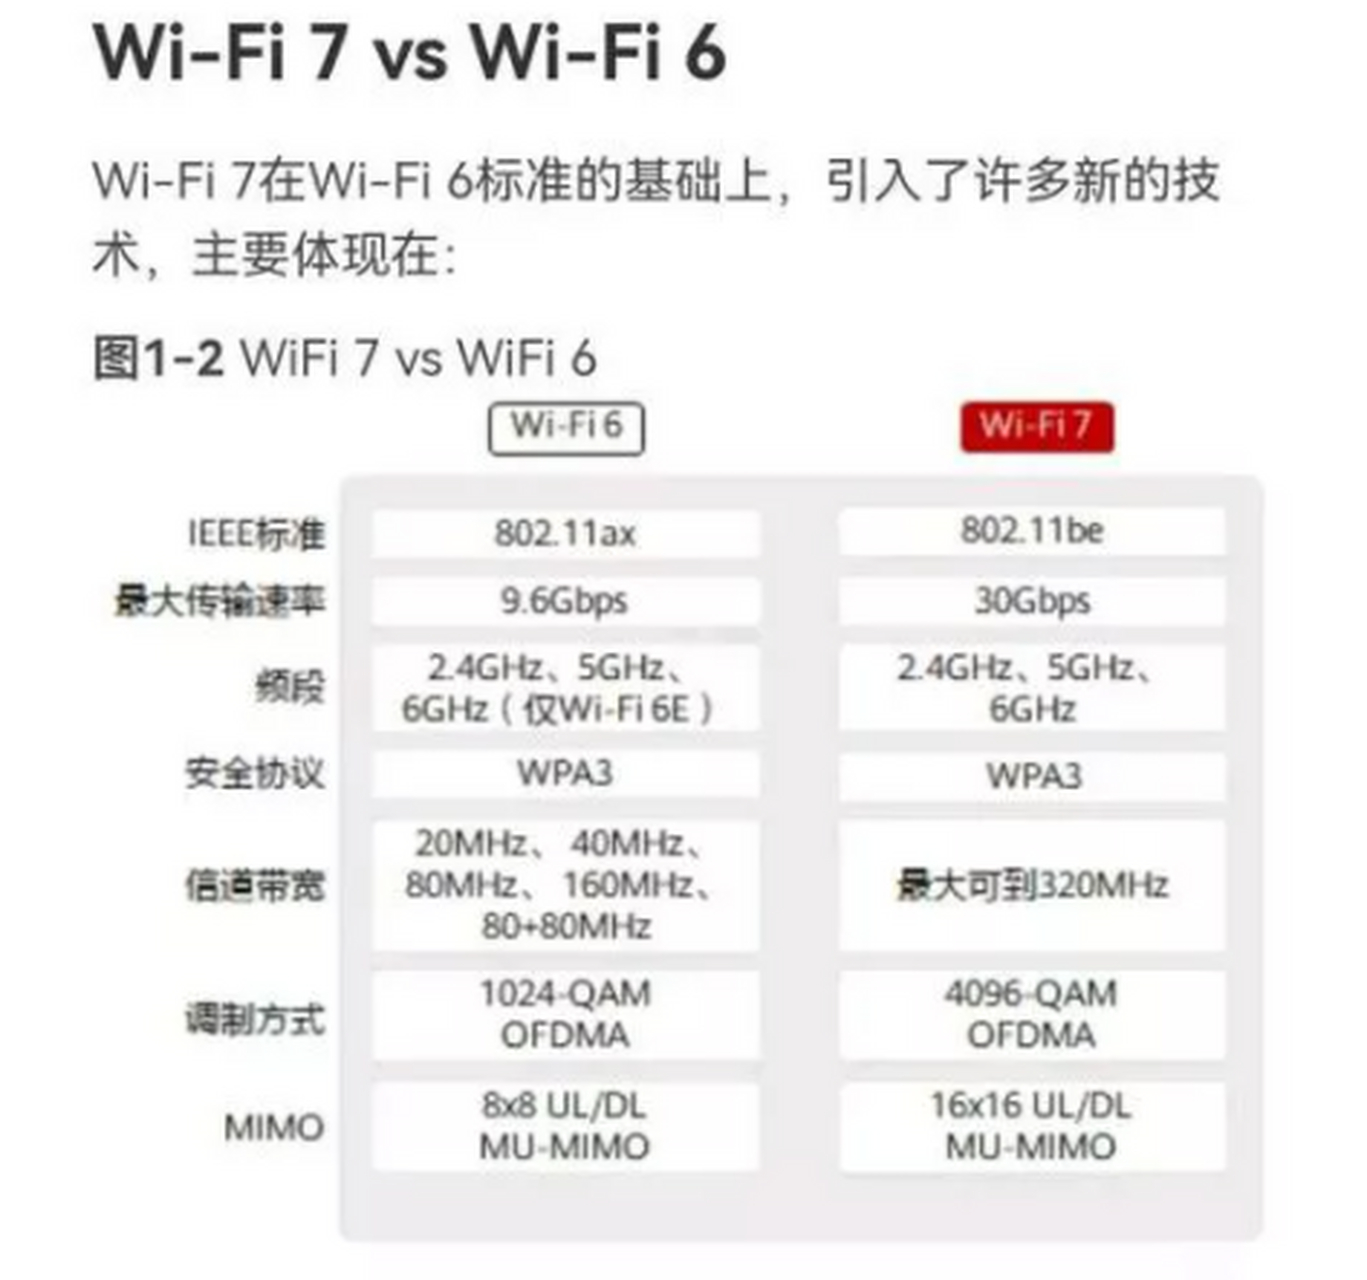 2021年华为wifi7标准贡献全球第一,远超高通和英特尔 华为表示,wifi7